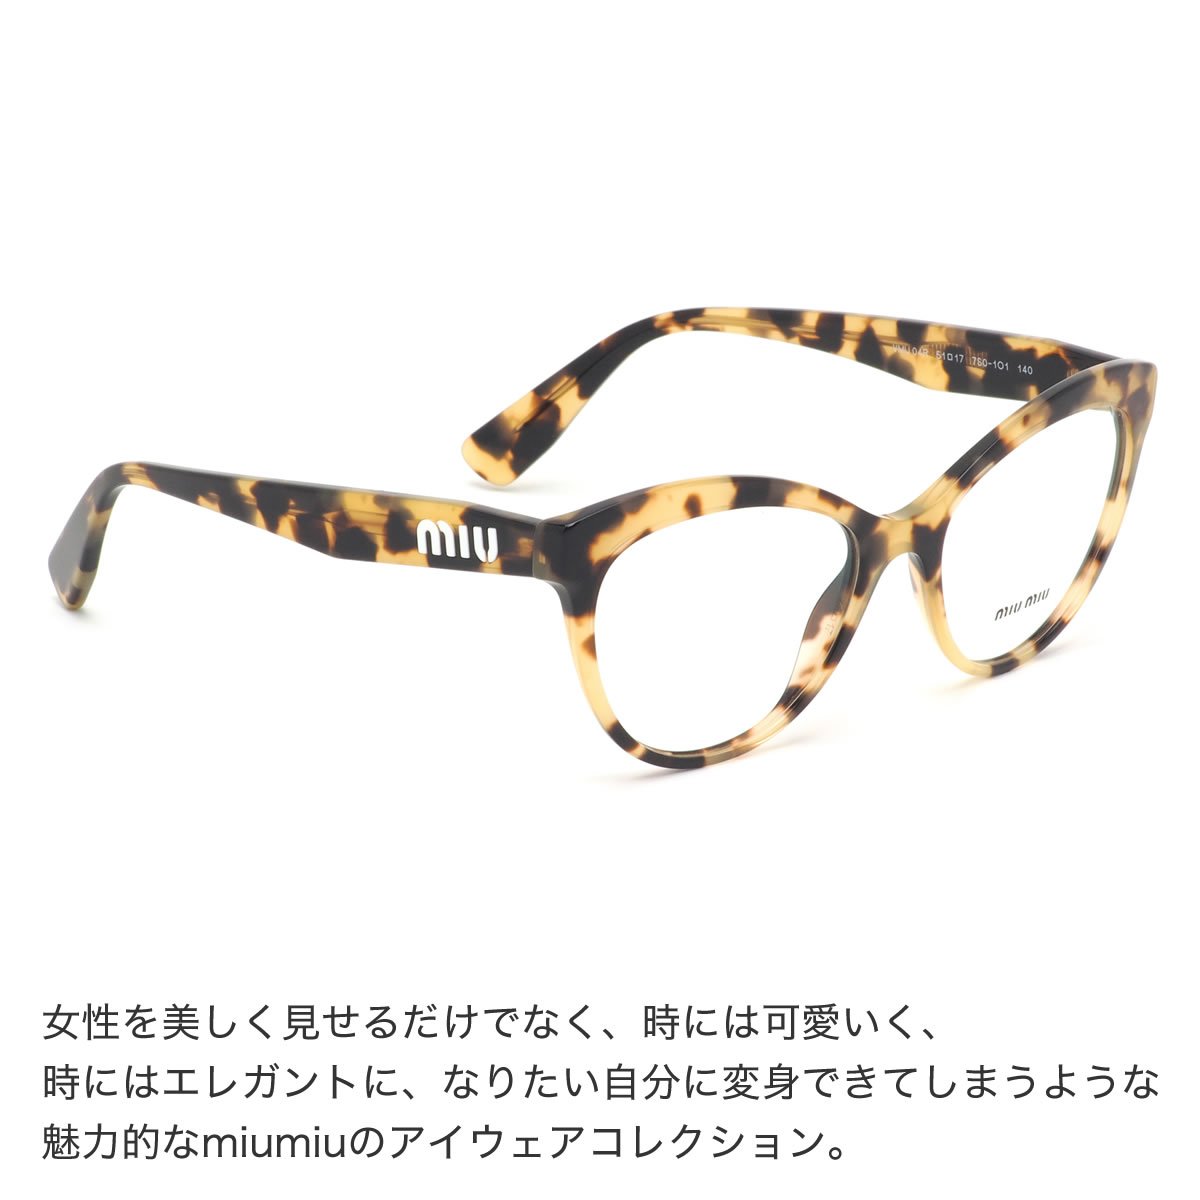 Miumiu アイウェアコレクション - サングラス/メガネ